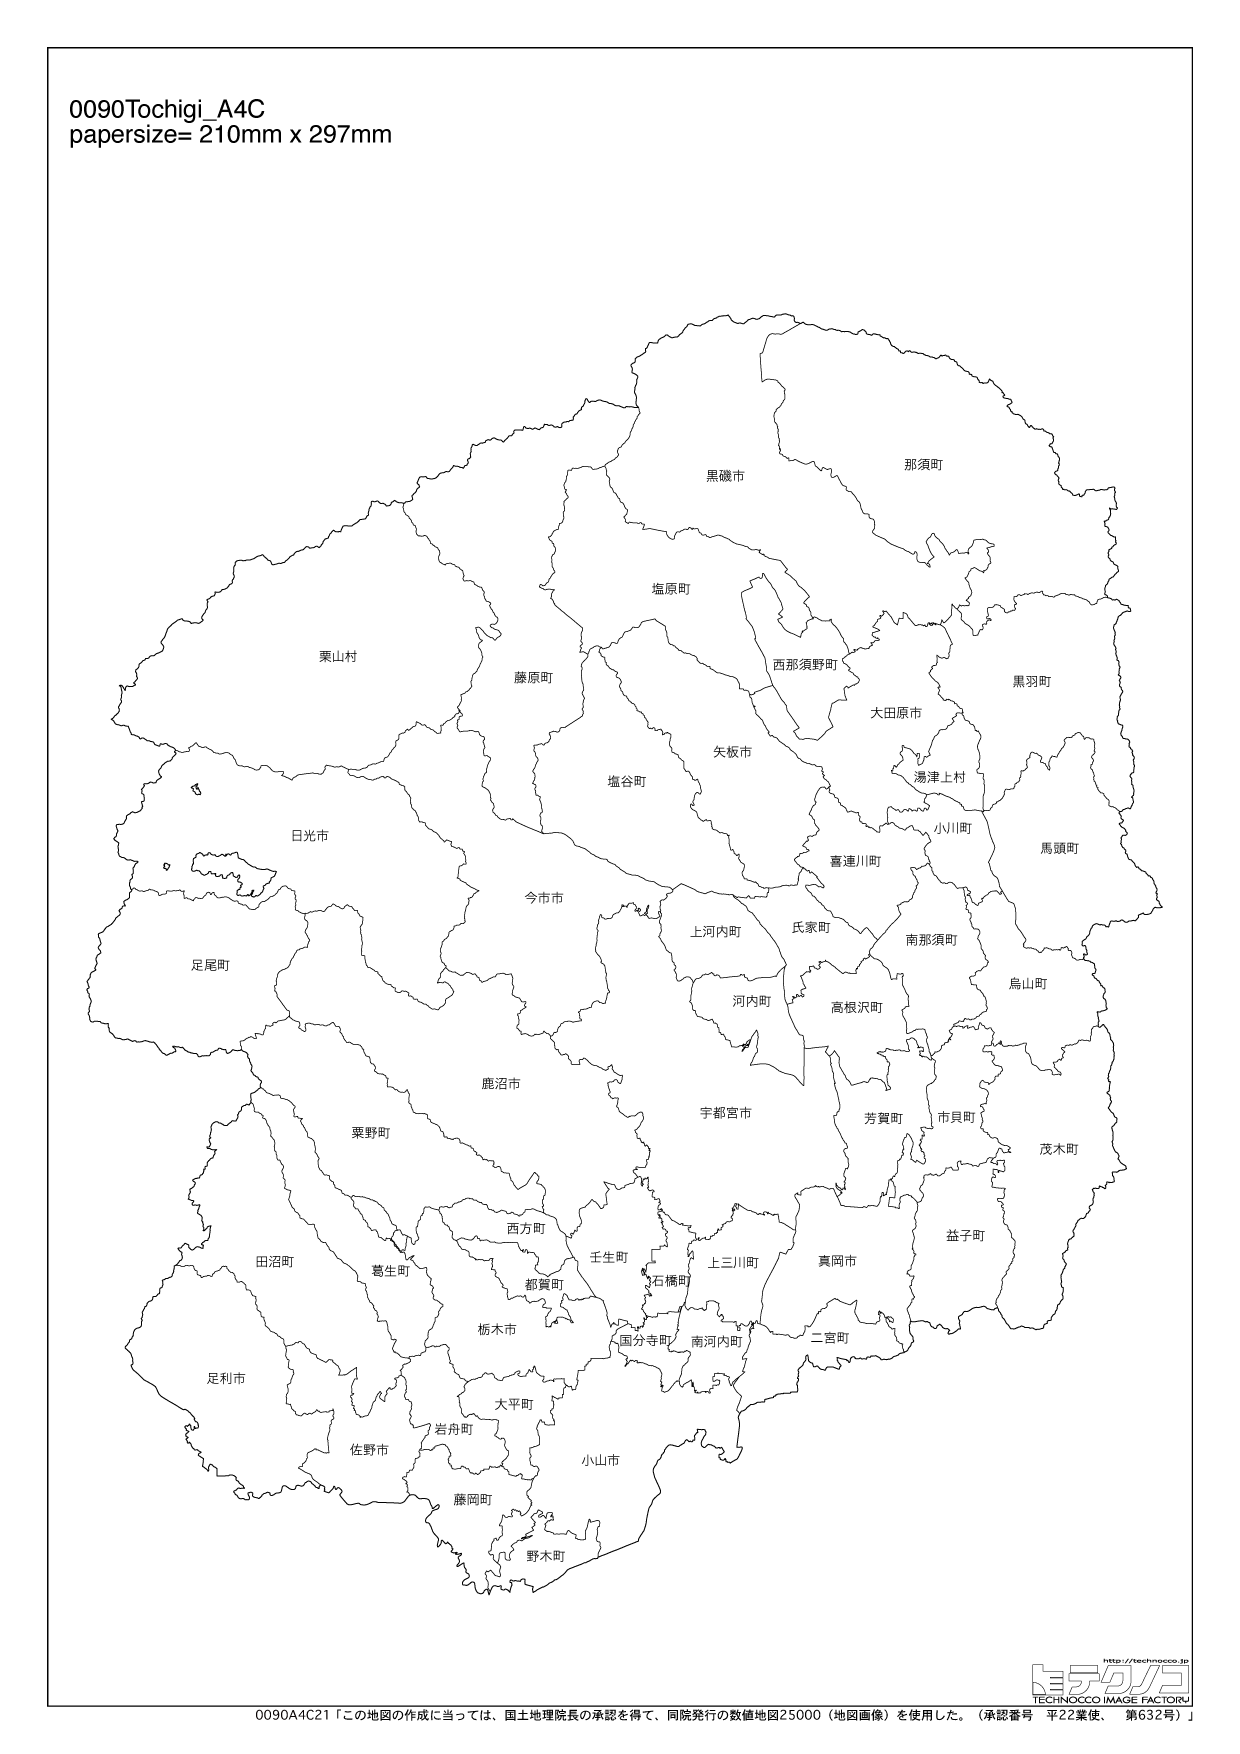 栃木県の白地図と市町村の合併情報